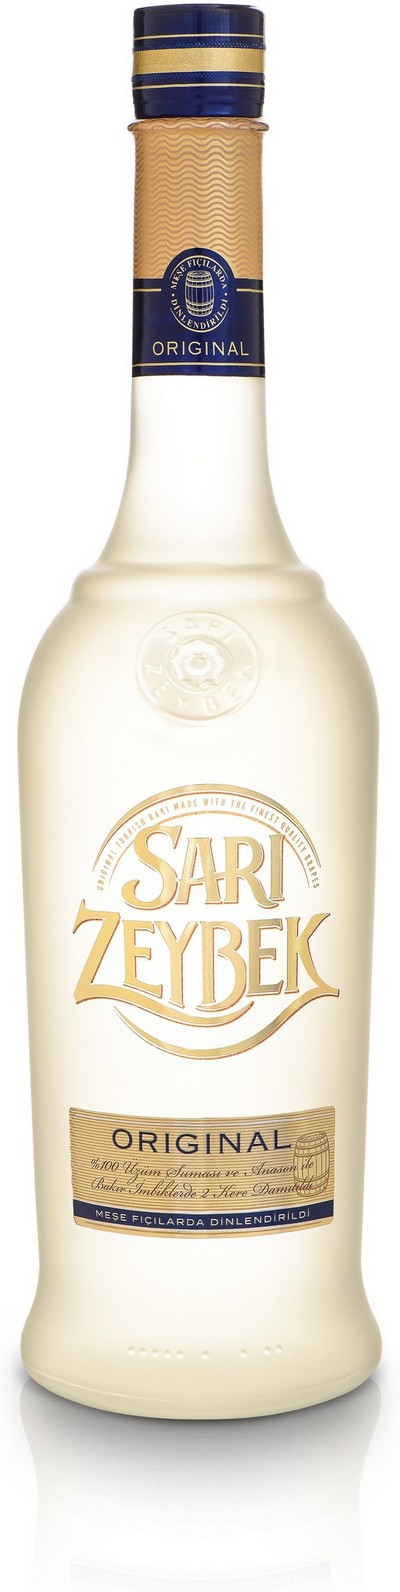 sari-zeybek-original-